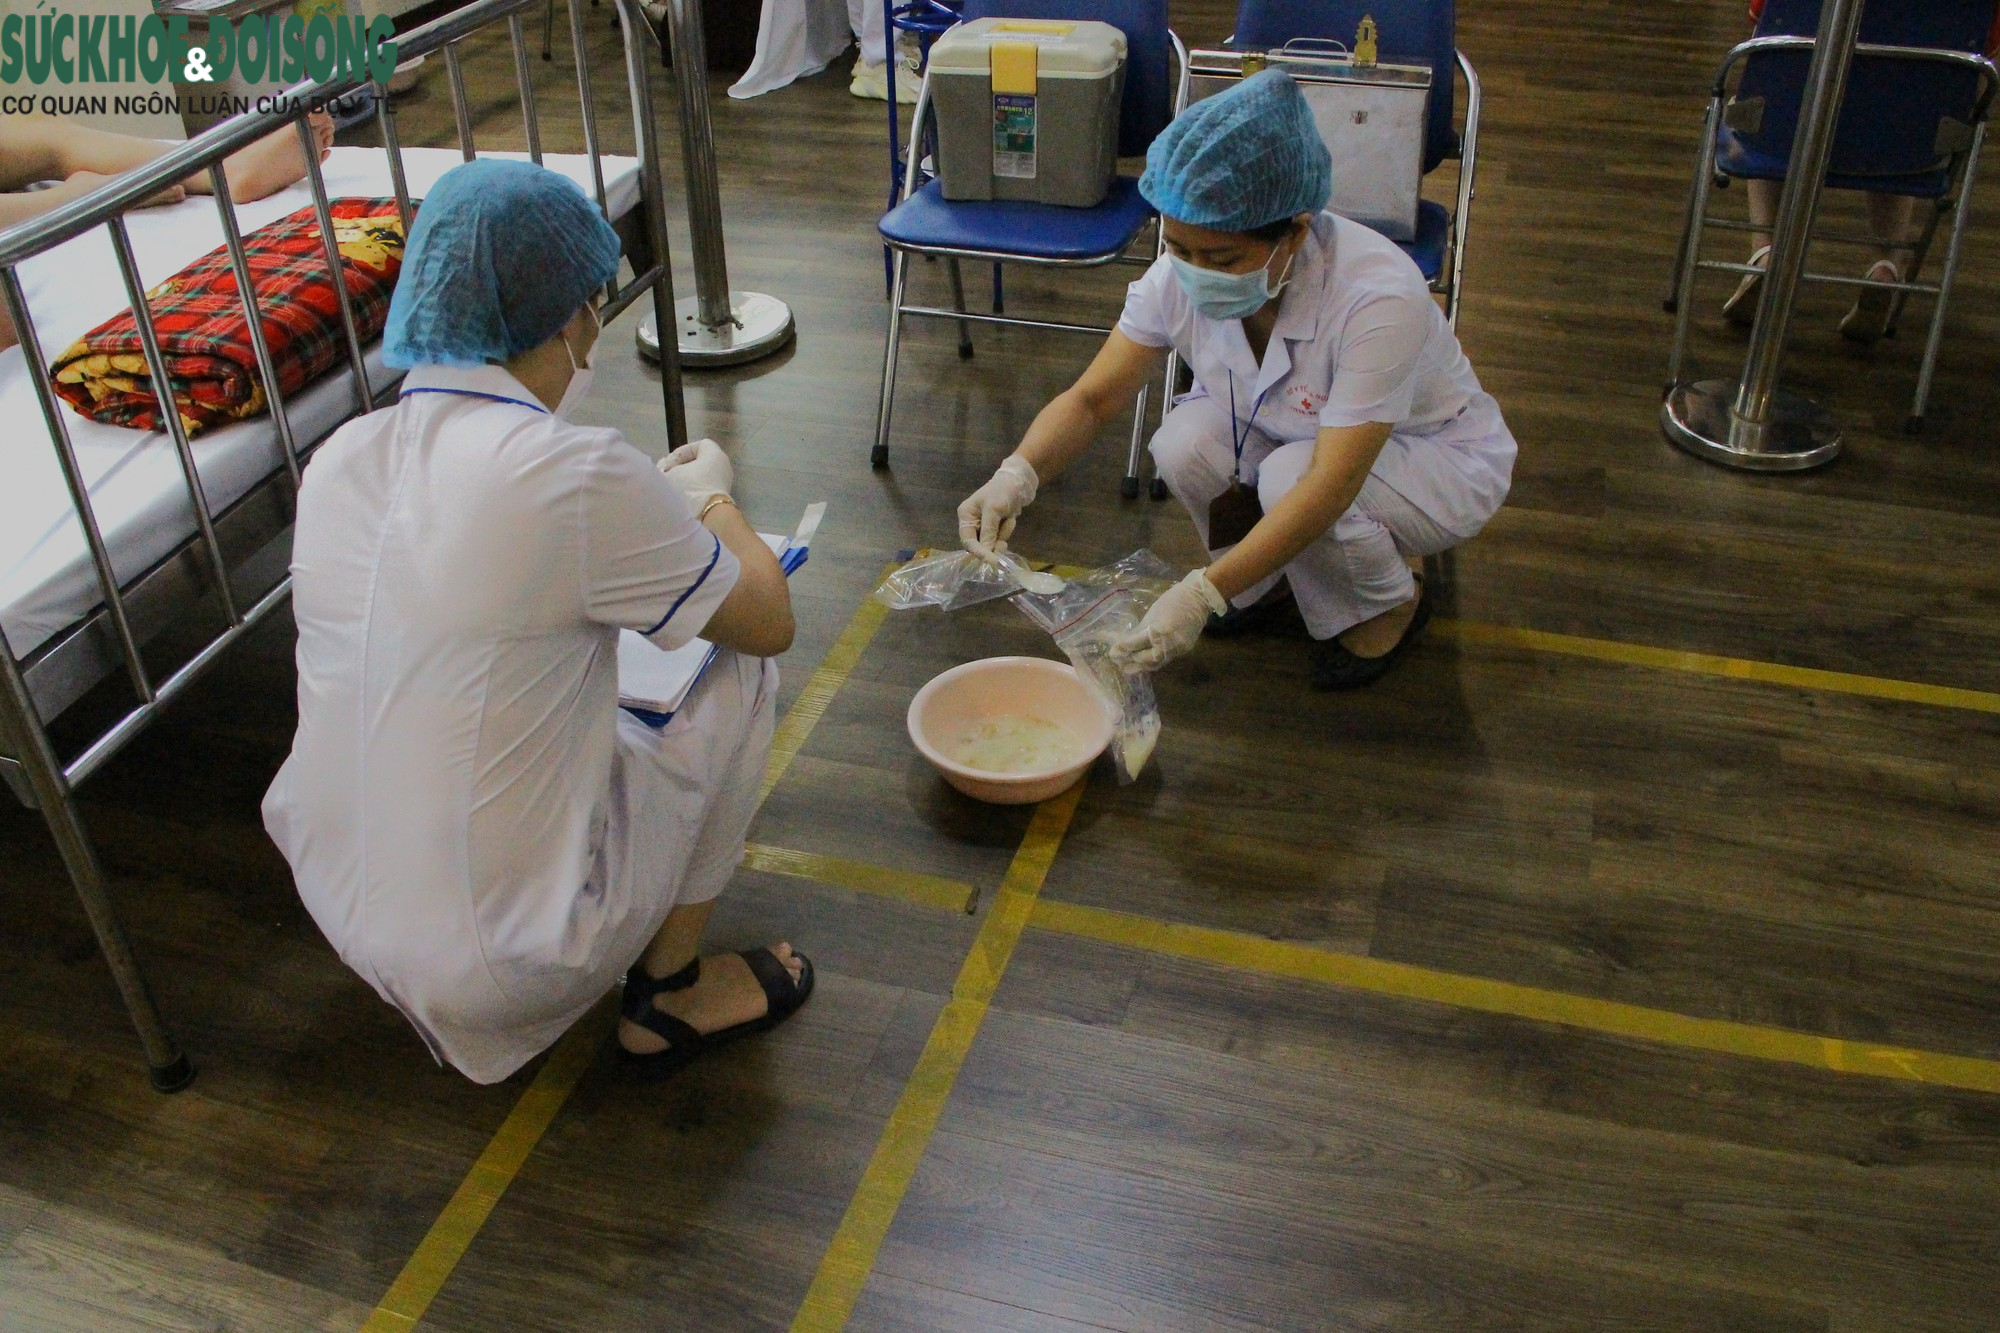 Toàn cảnh cuộc diễn tập điều tra, xử lý ngộ độc thực phẩm tập thể tại trường học - Ảnh 21.